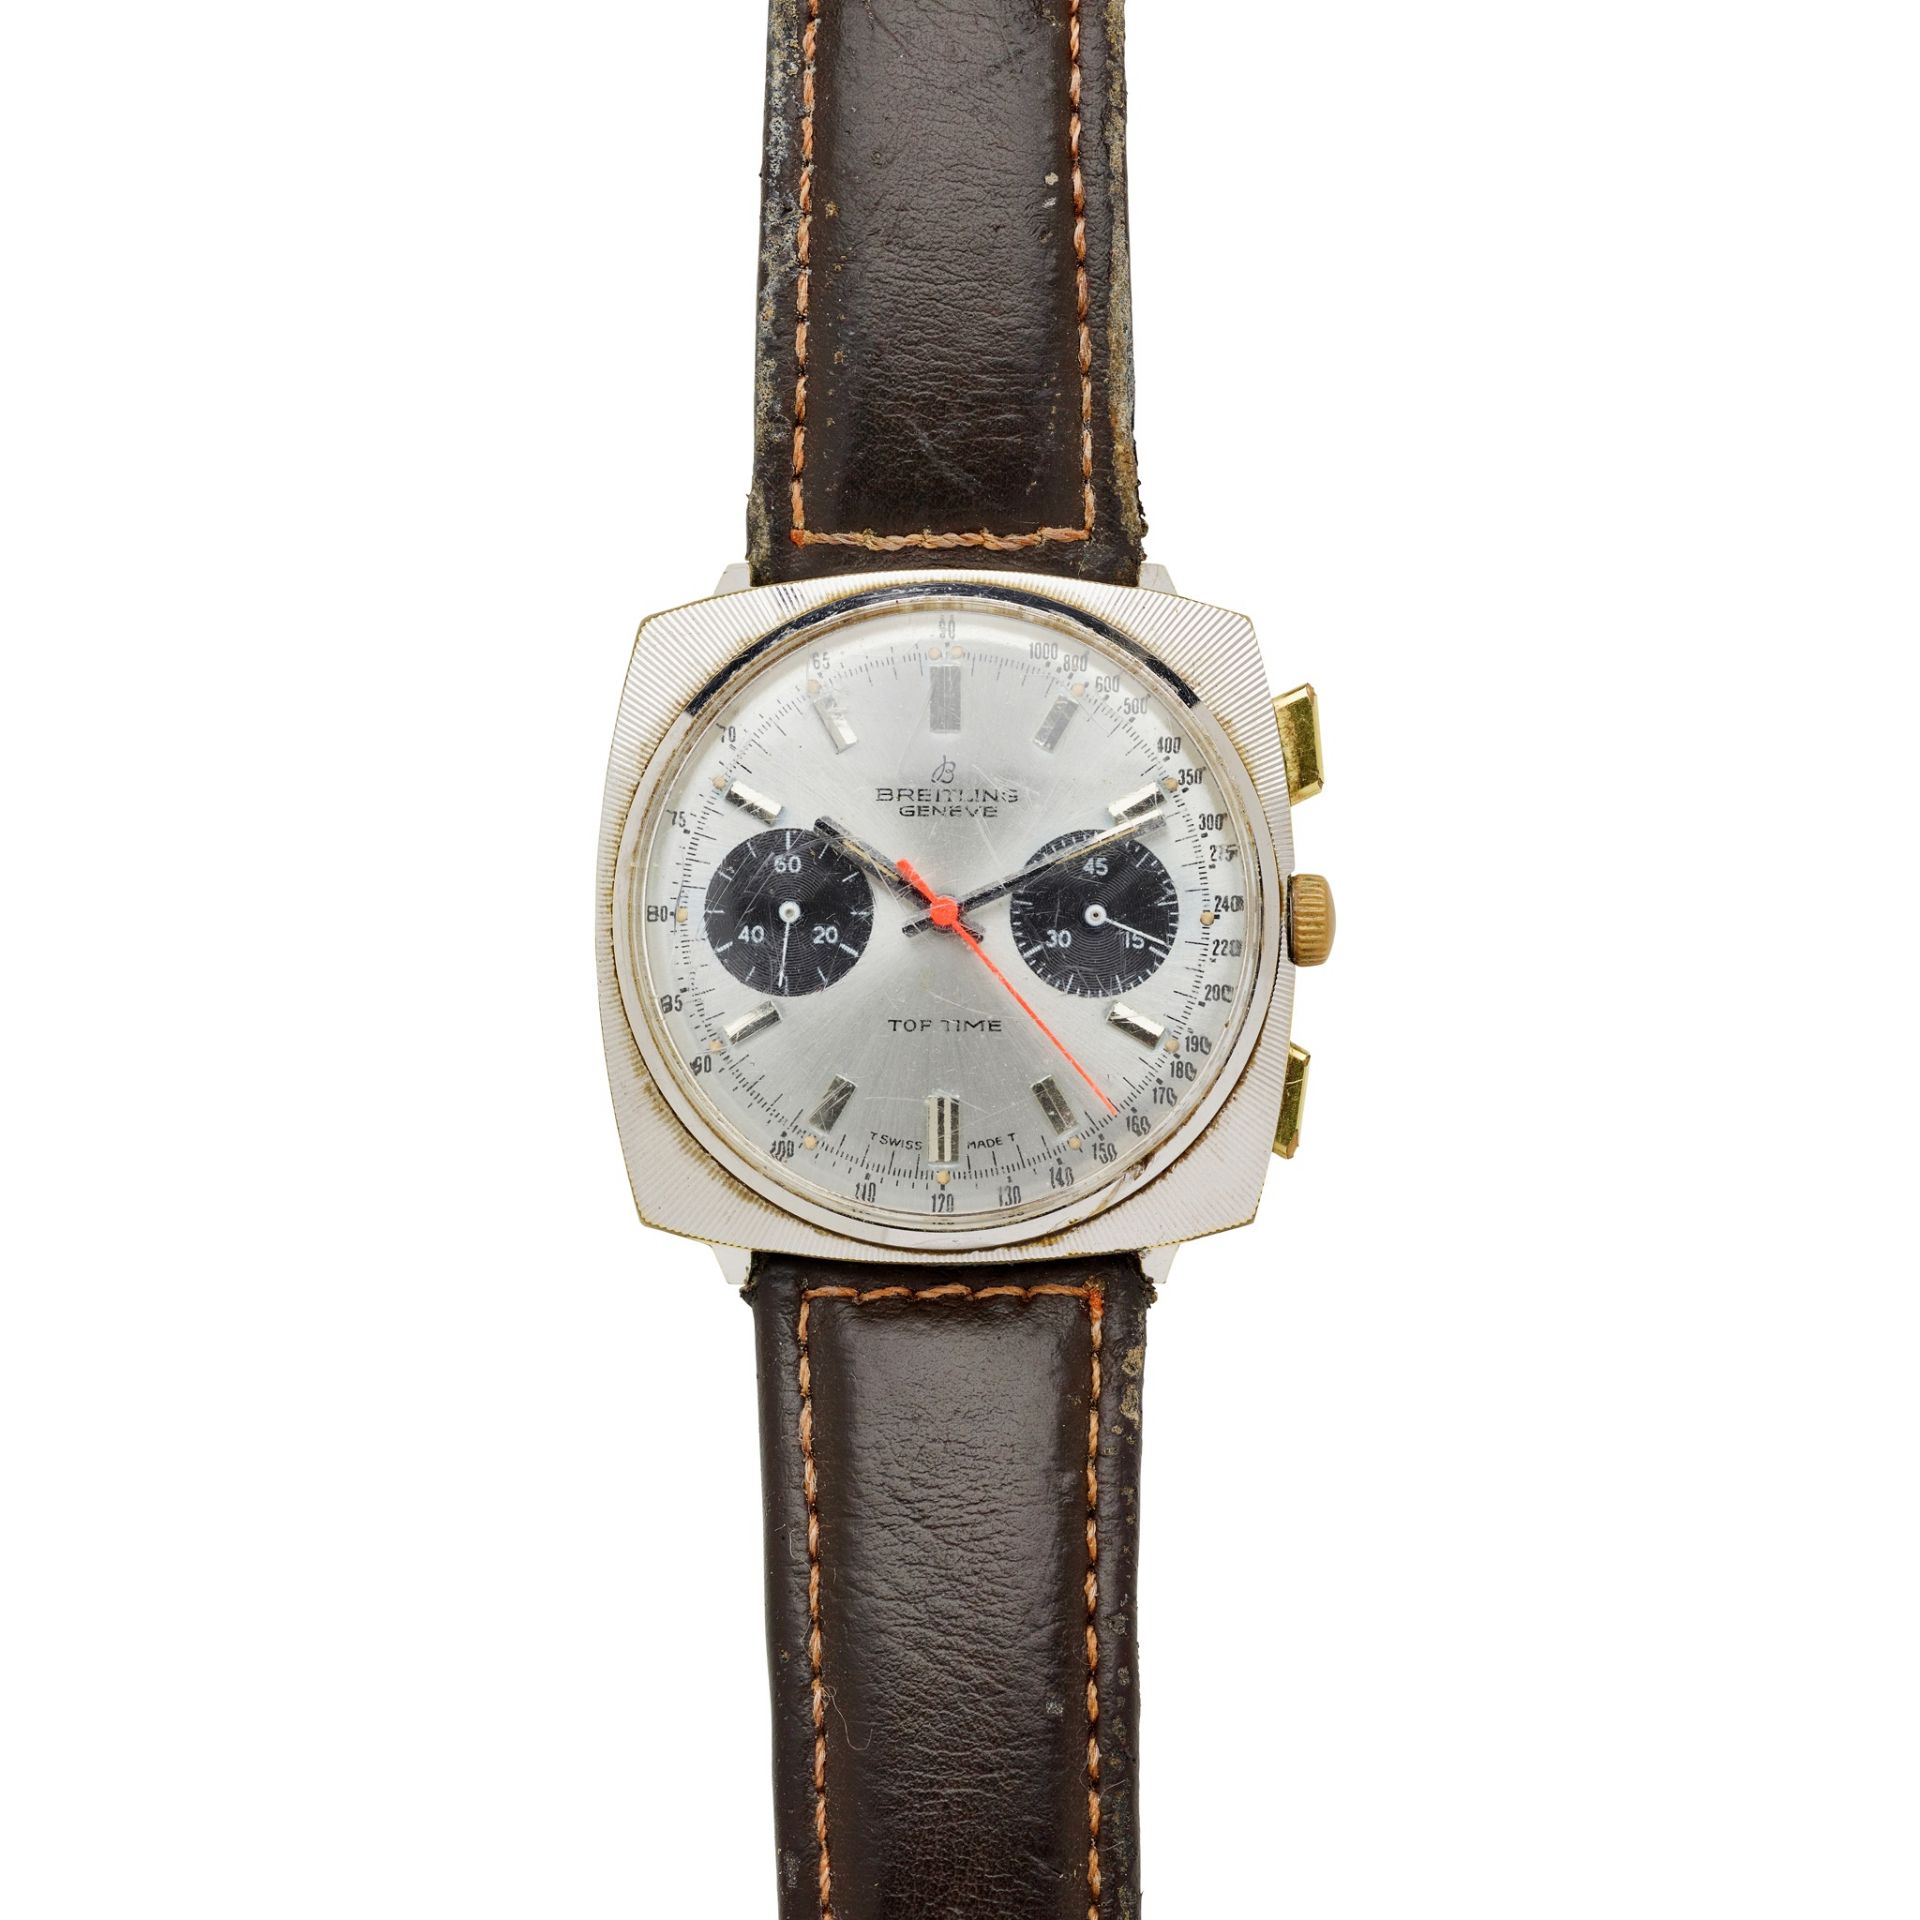 Breitling: a 1960s wrist watch